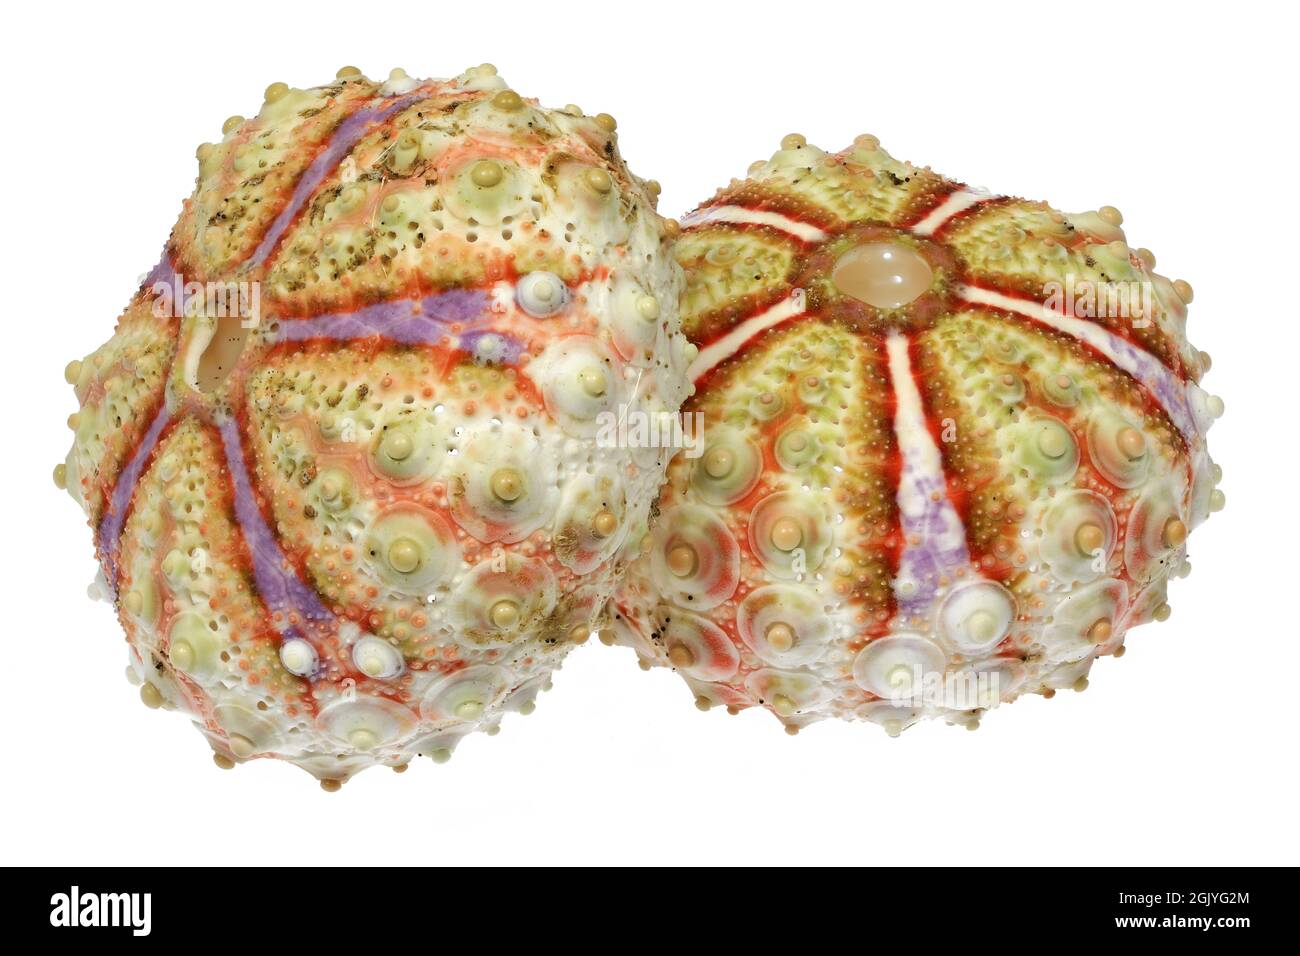 Oursin de mer (Coelopleurus maillardi) de Cebu, Philippines isolé sur fond blanc Banque D'Images